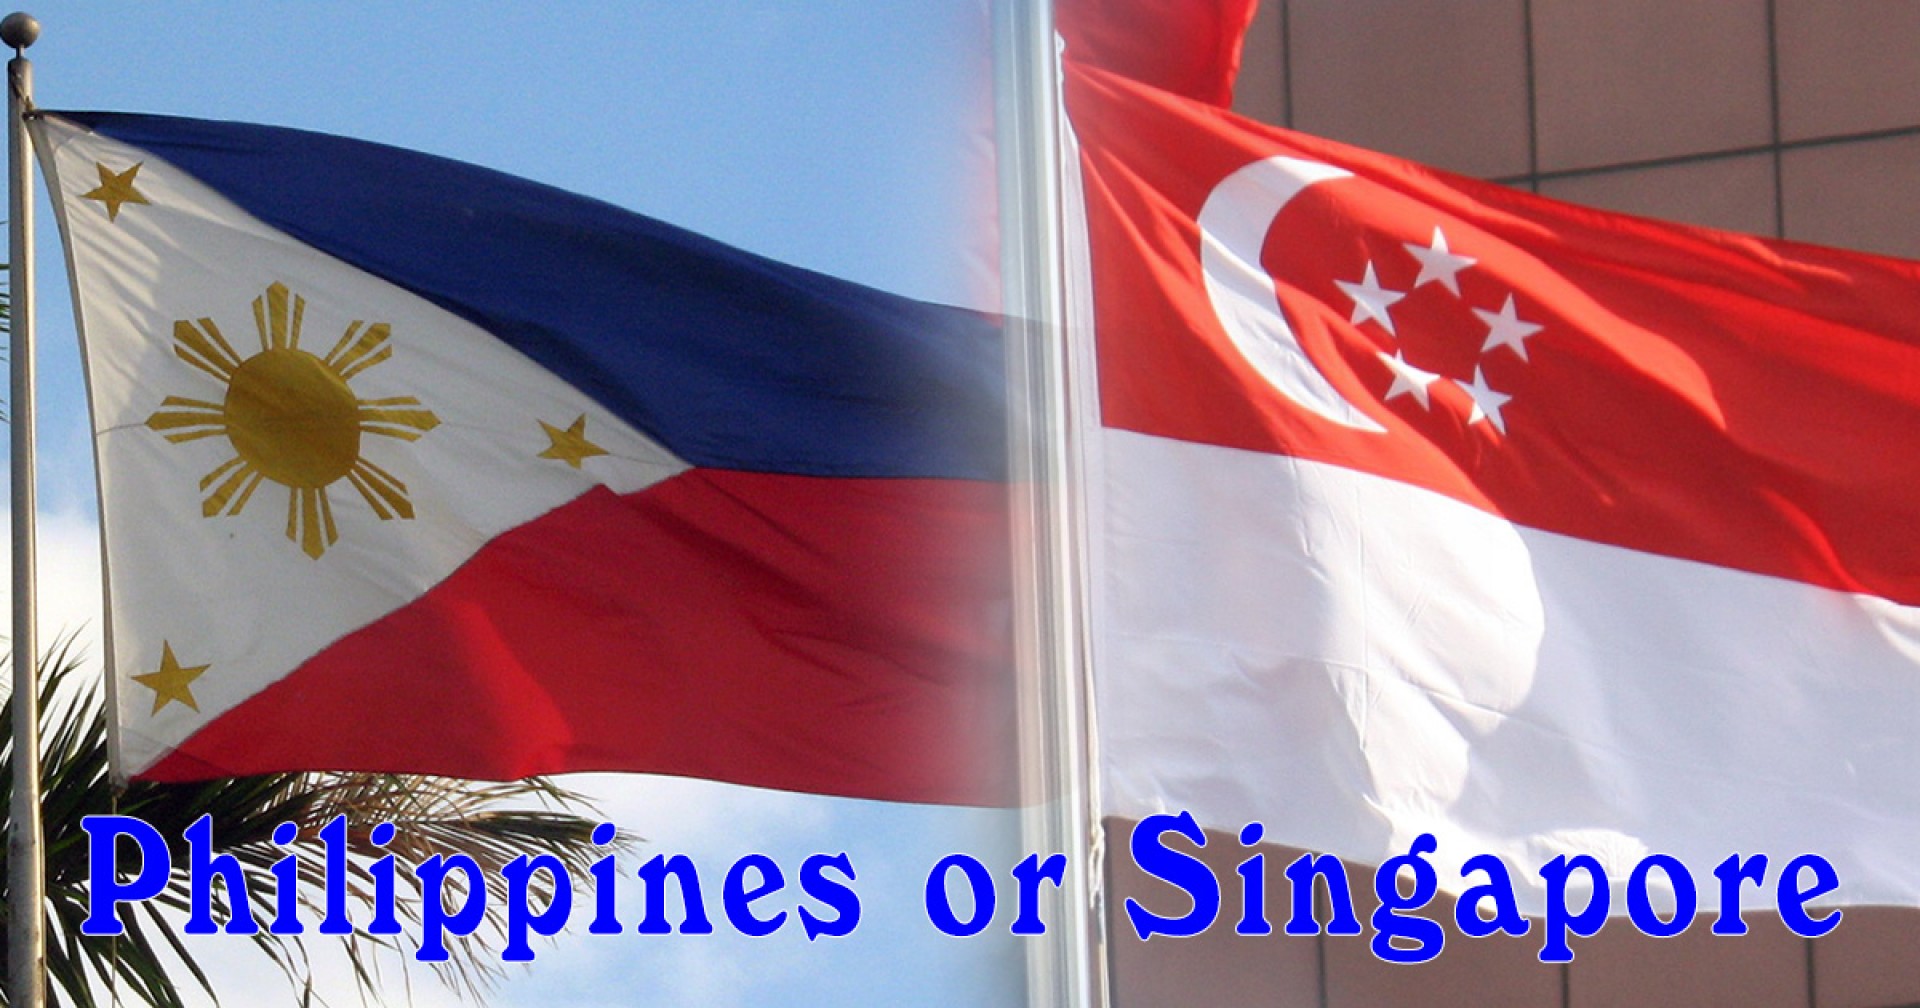 Du học tiếng Anh tại Philippines và Singapore có gì khác nhau? 